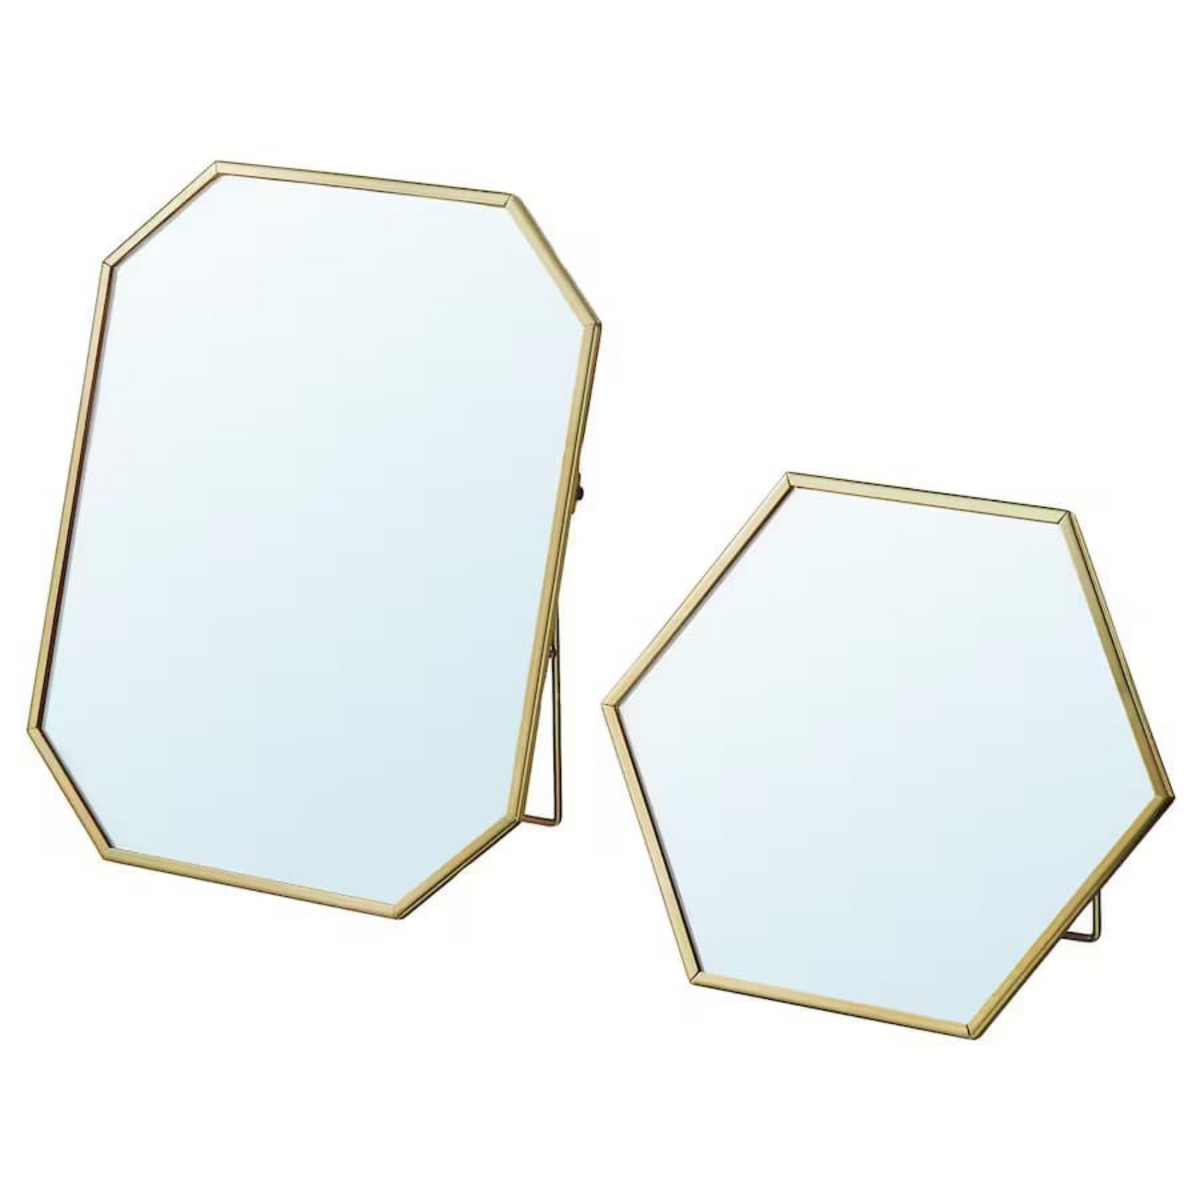 LASSBYN Mirror, Set of 2